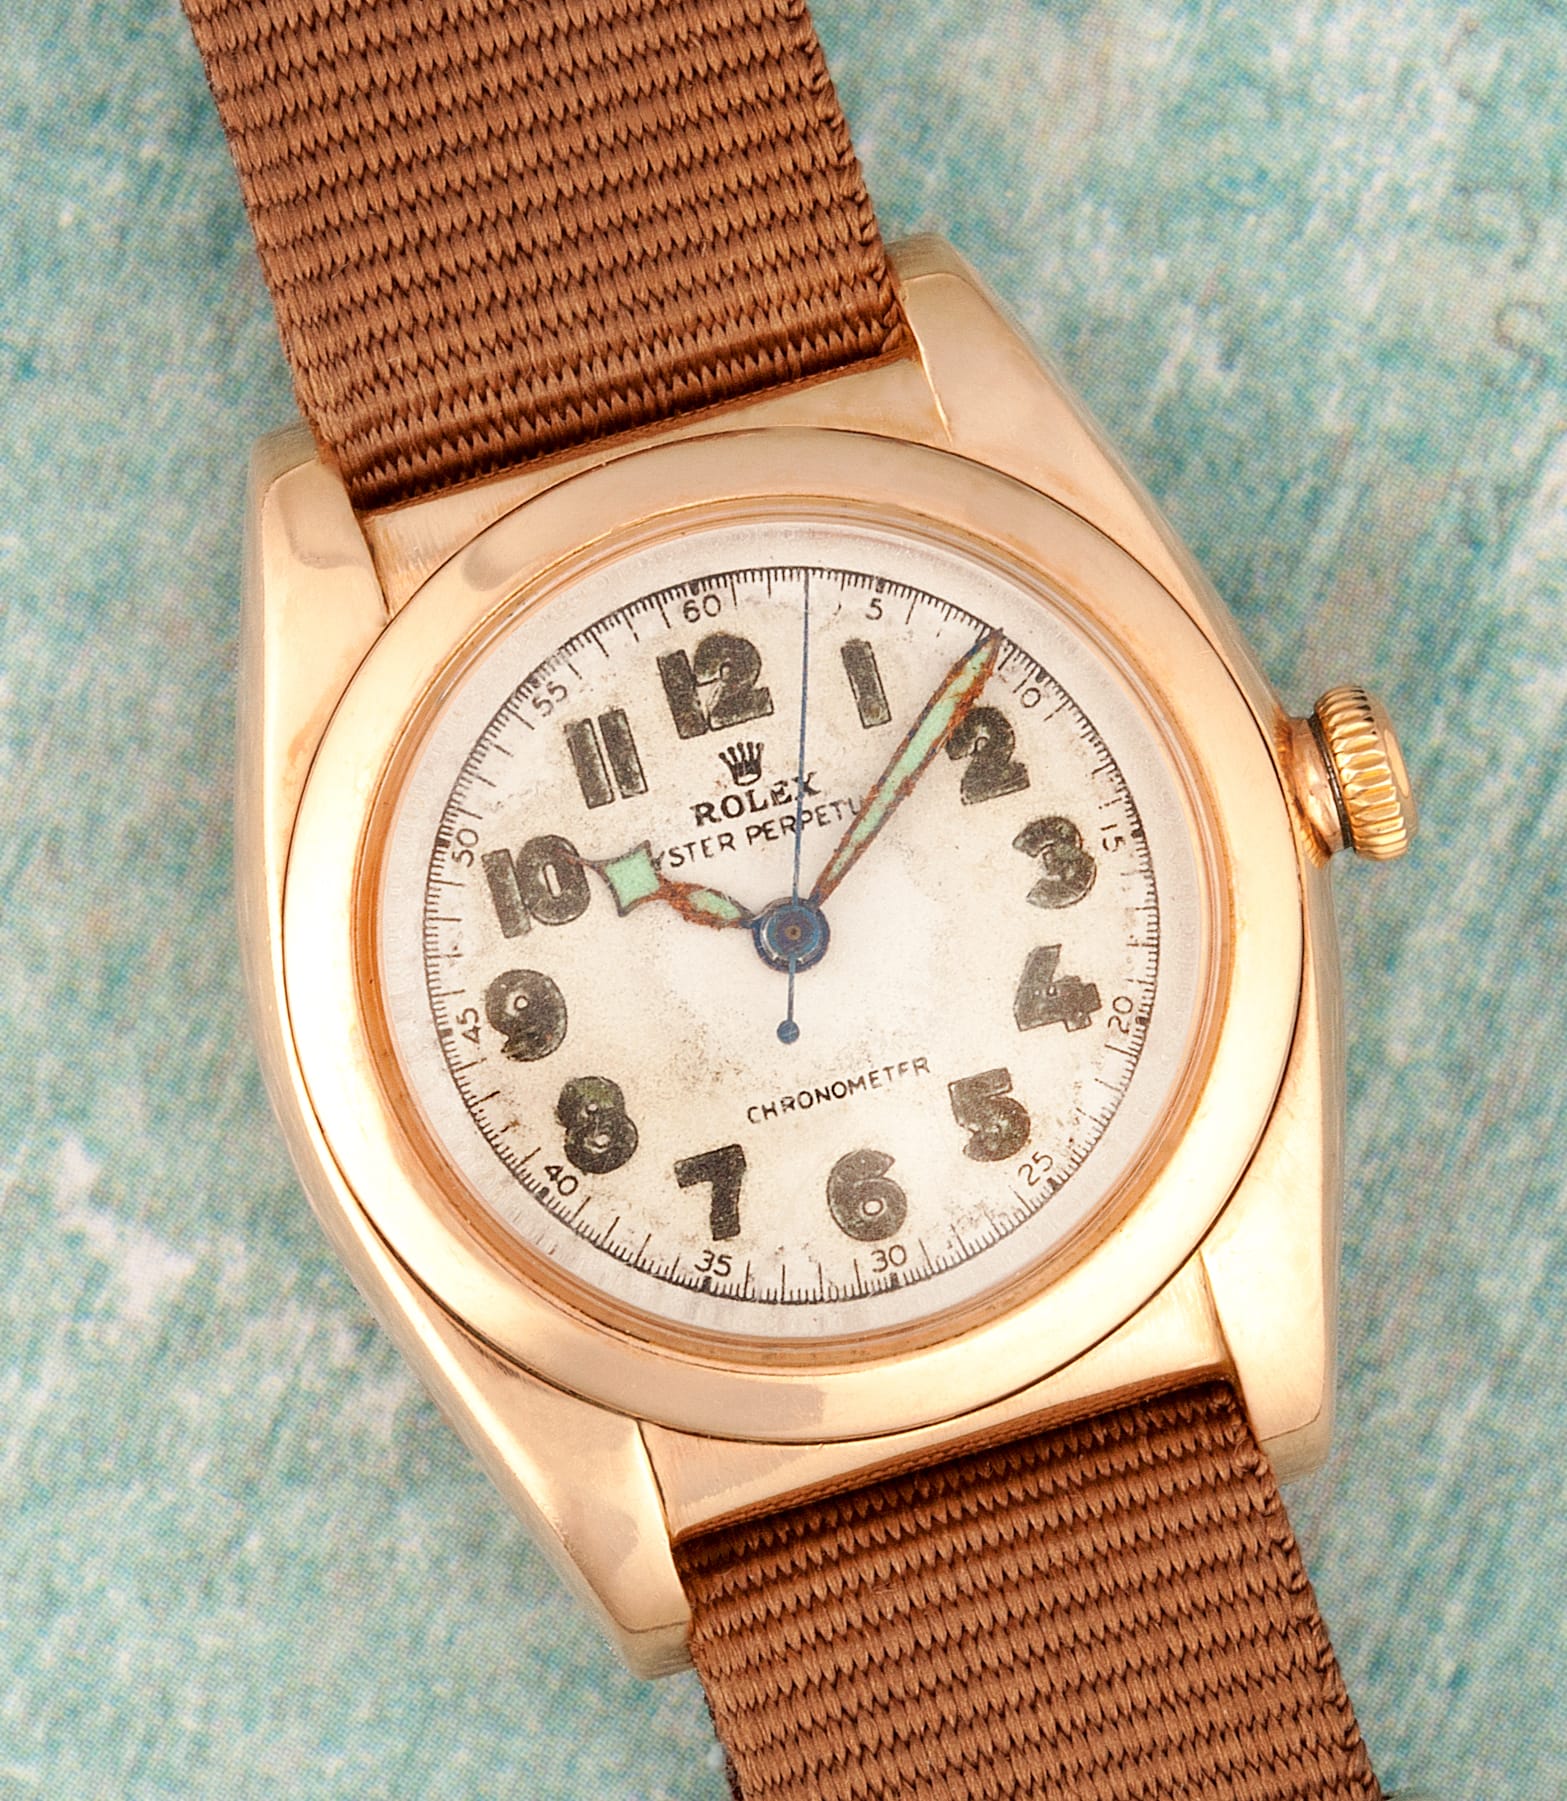 First Rolex Watch Ever Made 